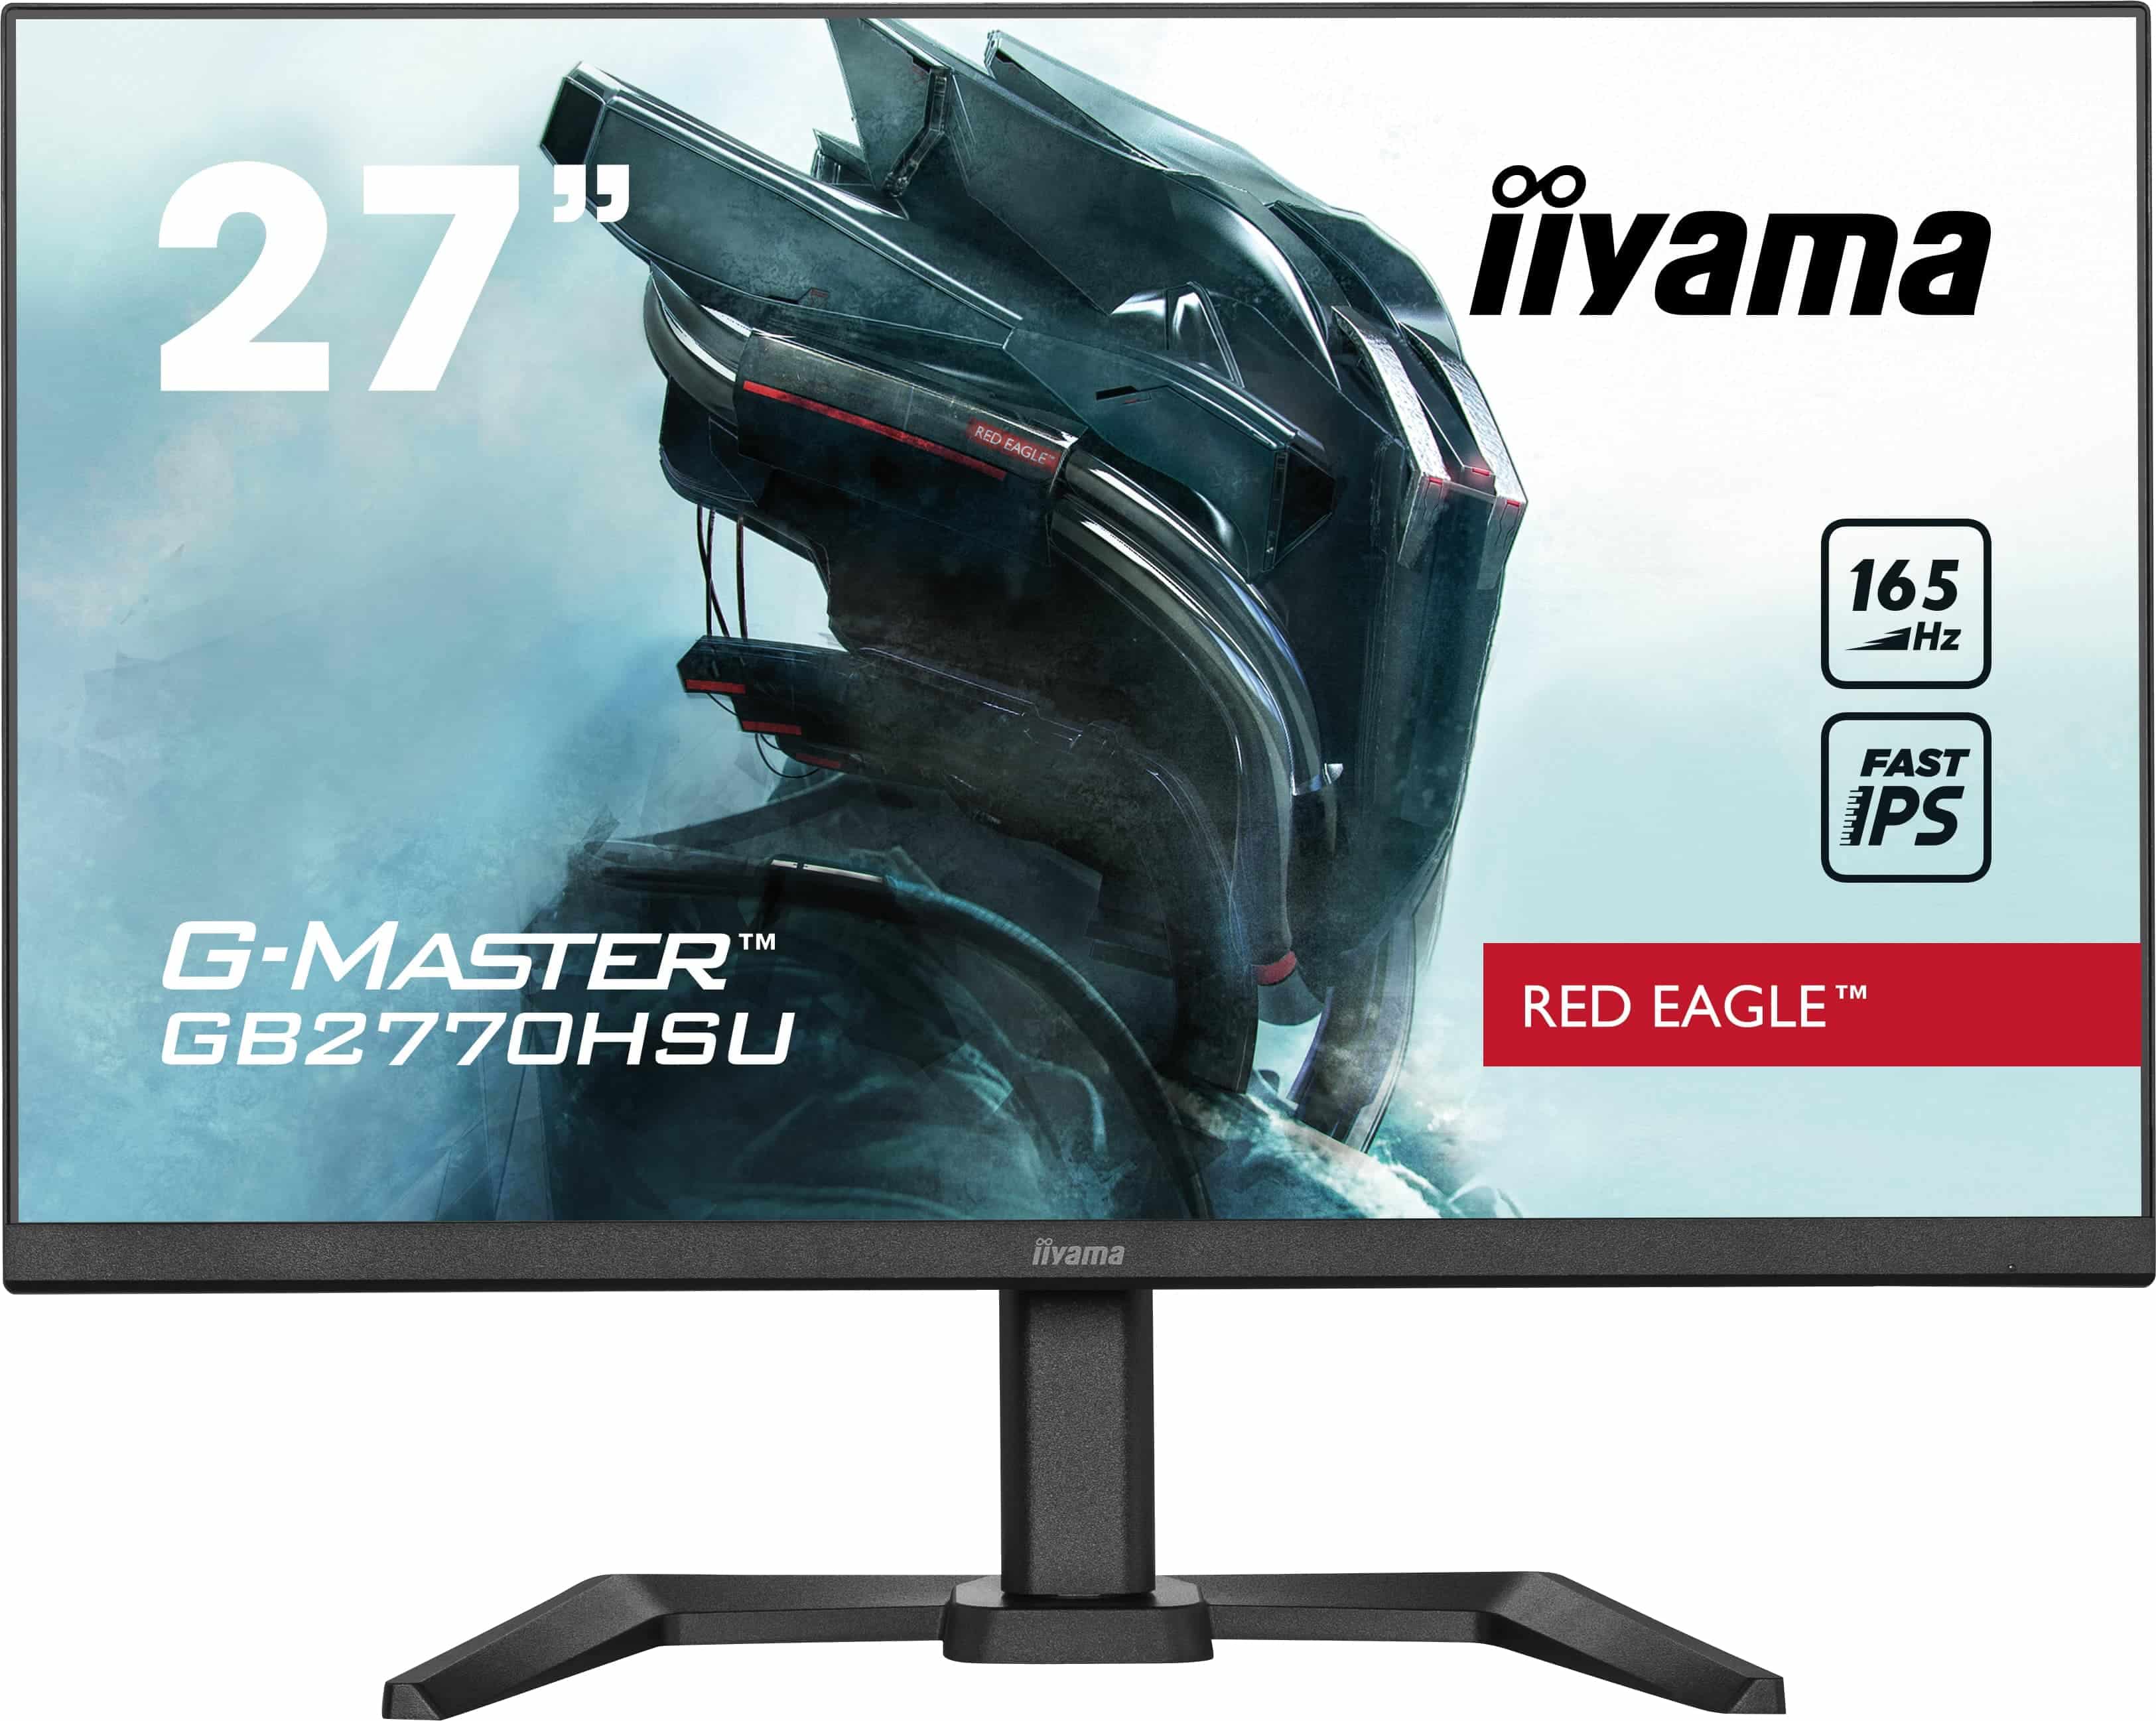 Iiyama G-MASTER GB2770HSU-B5 | 27" | 165Hz | Full HD | DisplayPort | Gaming Monitor